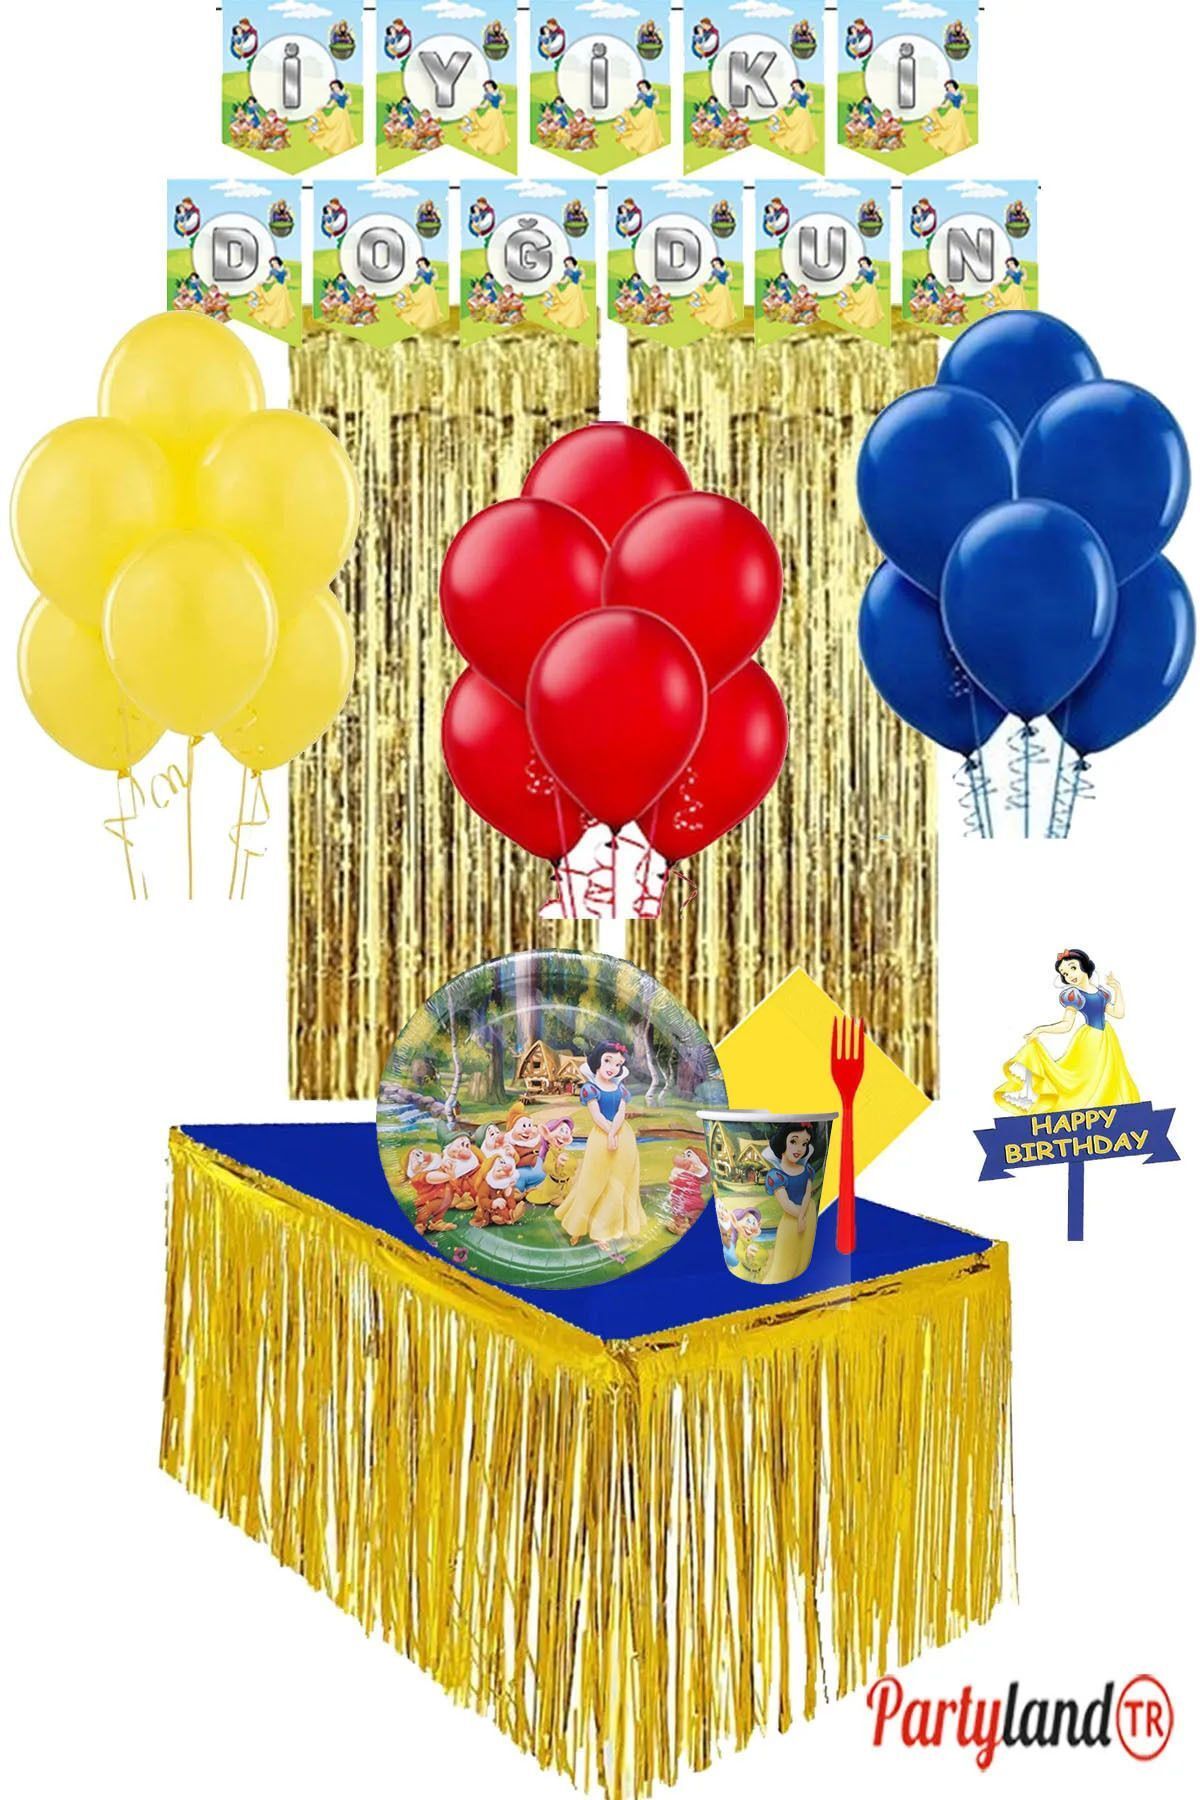 PartylandTR Pamuk Prenses 16 Kişilik Doğum Günü Parti Seti